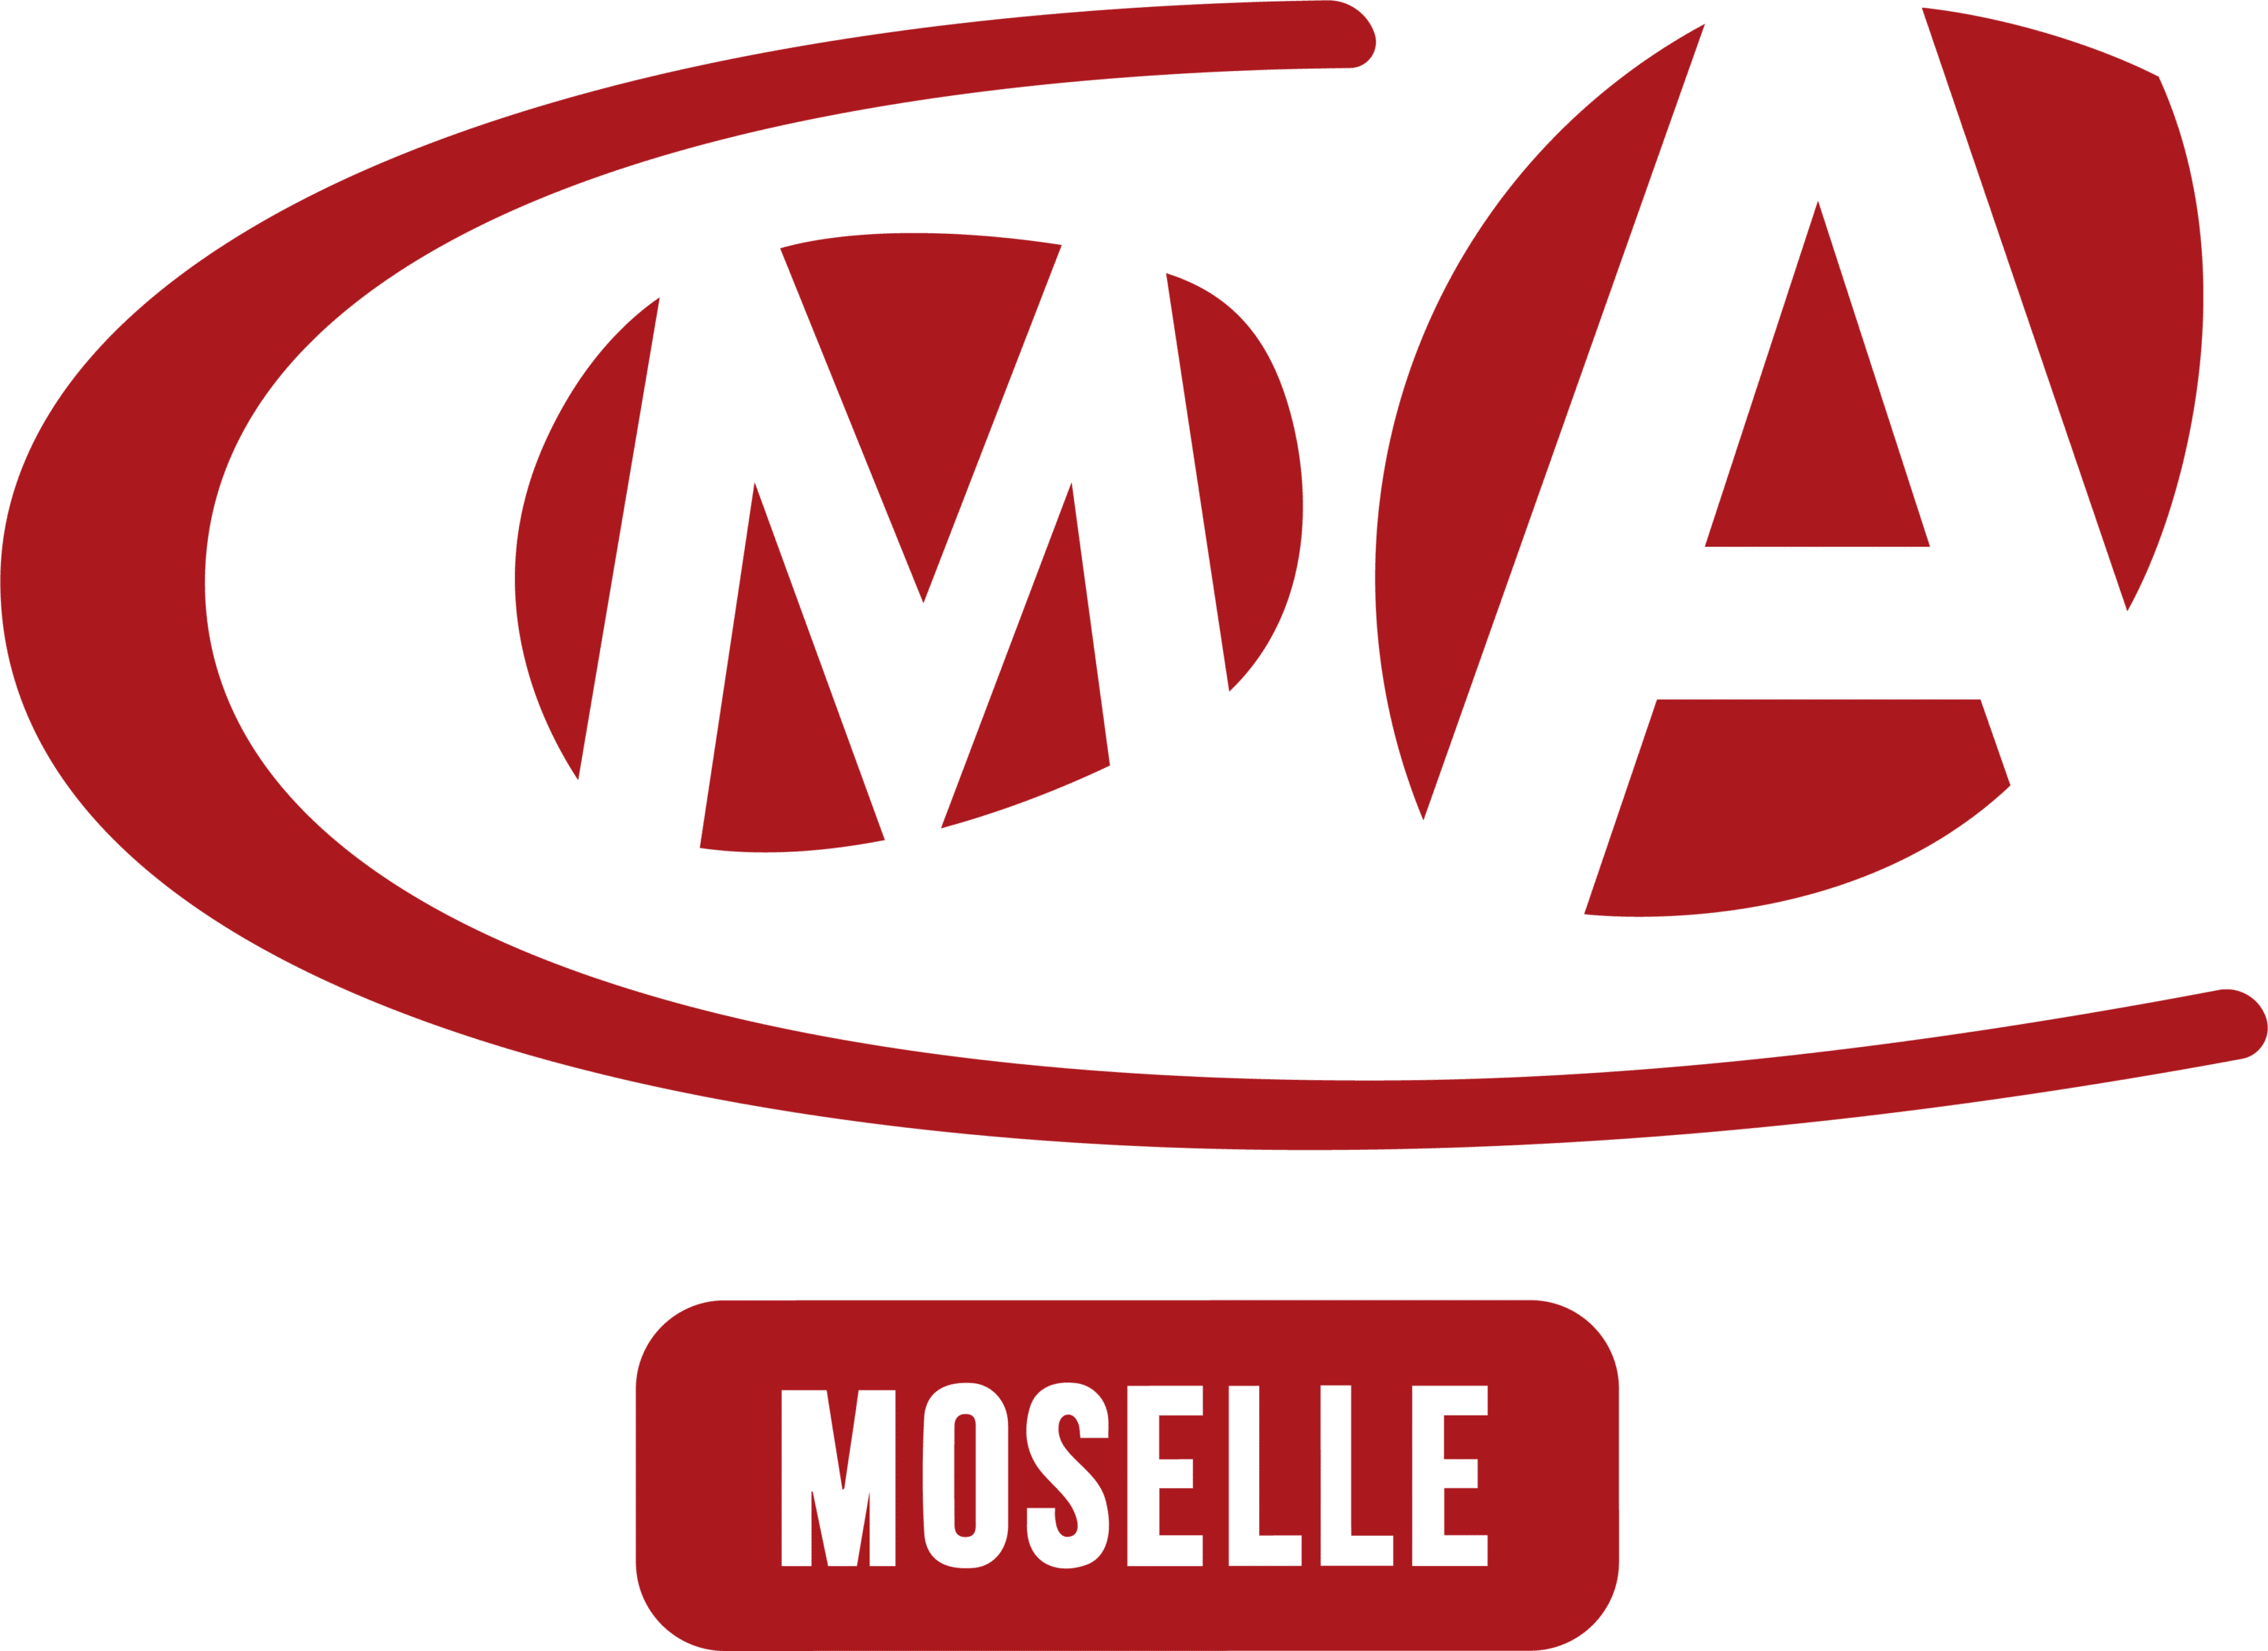 CMA MOSELLE_Partenaire_Myreseau